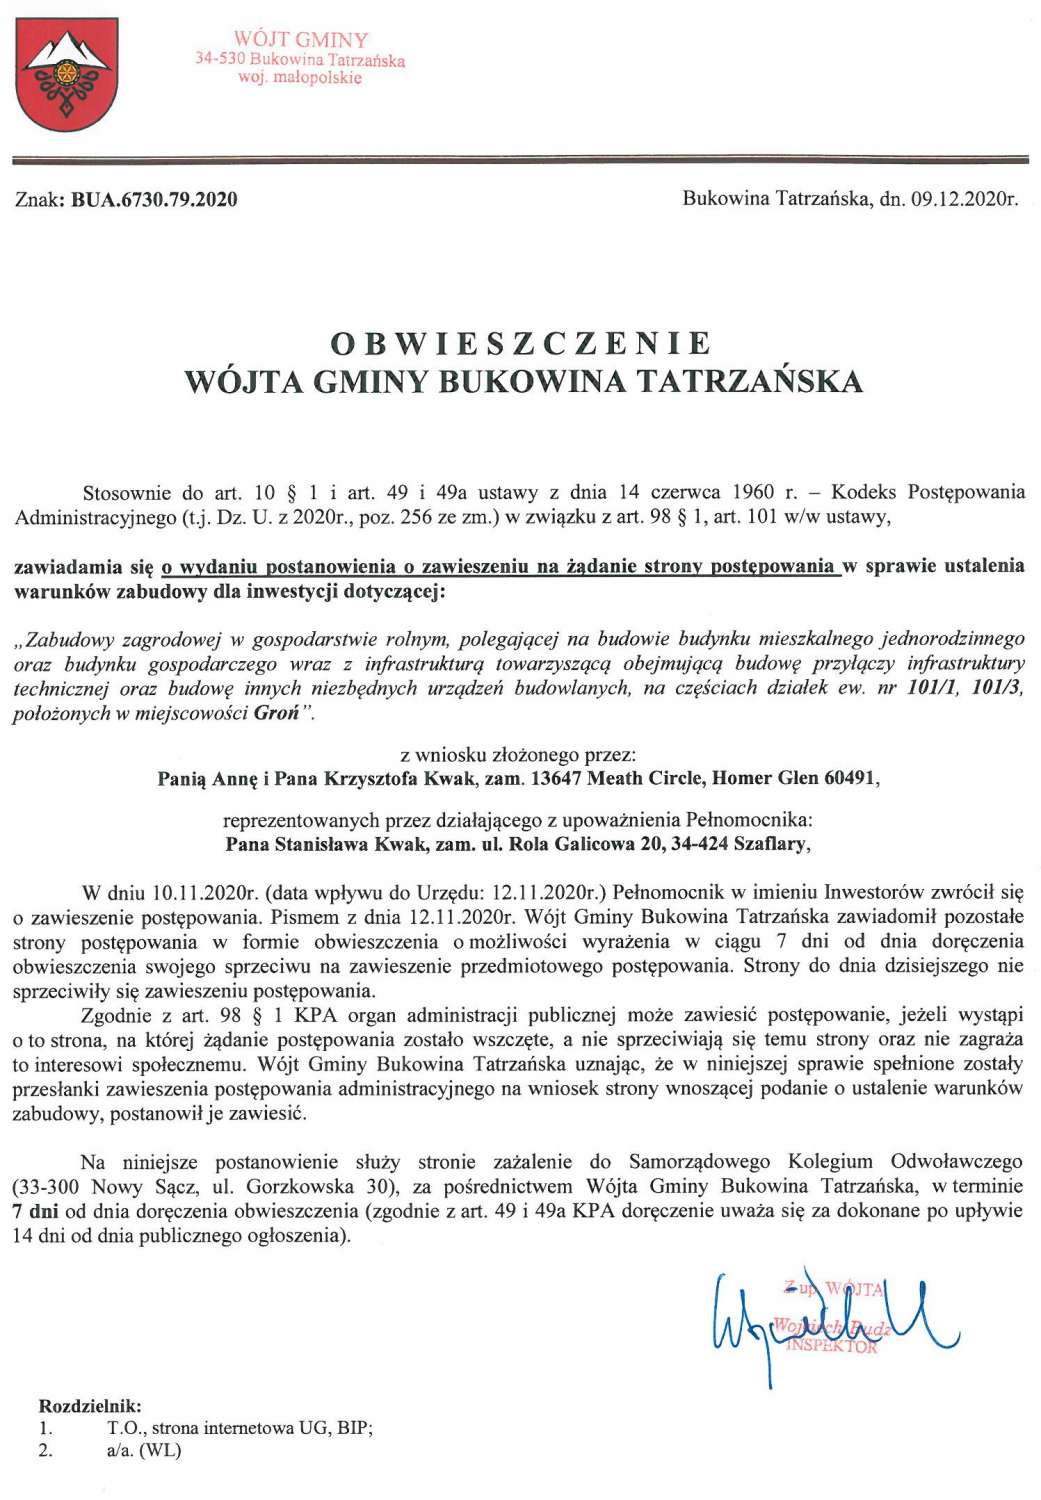 Obwieszczenie Wójta Gminy Bukowina Tatrzańska BUA 6730.79.2020